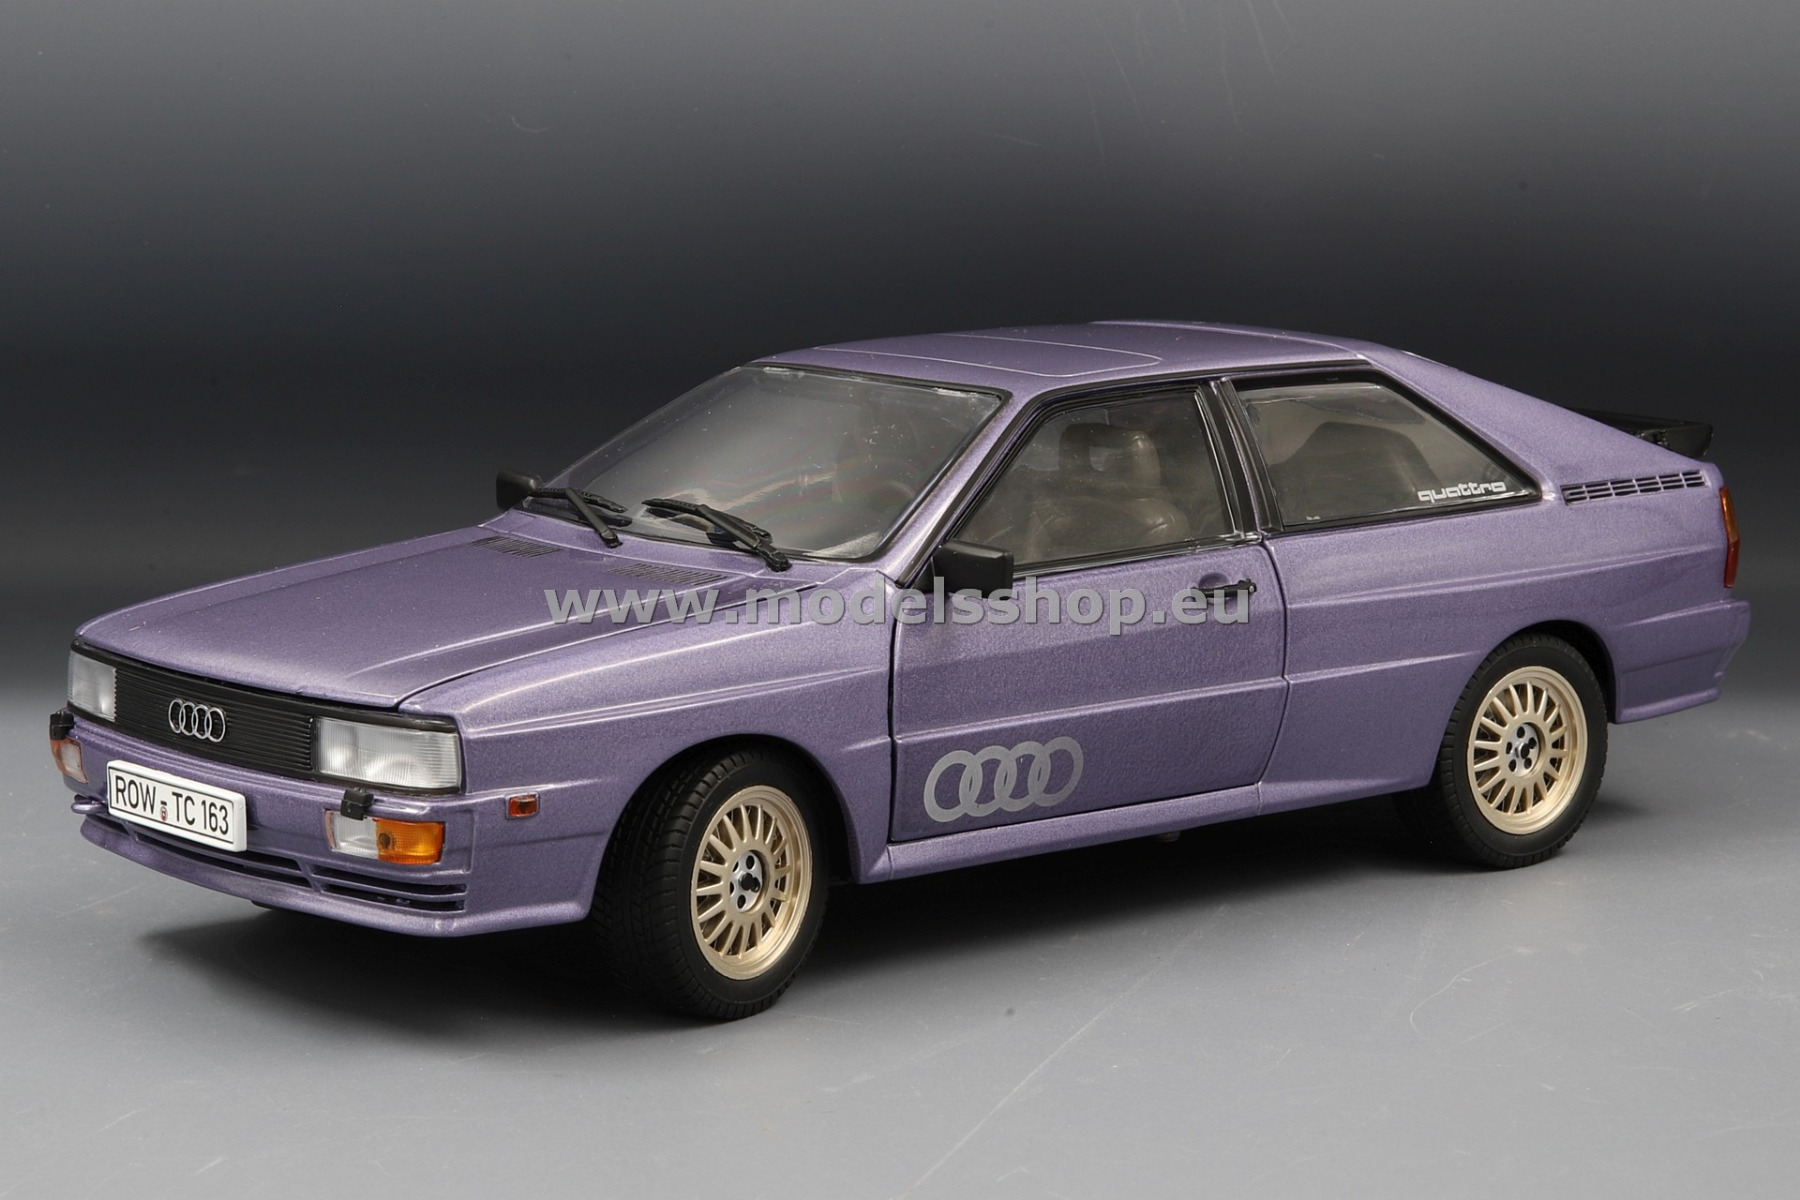 Audi Quattro, 1981a /purple - metallic/